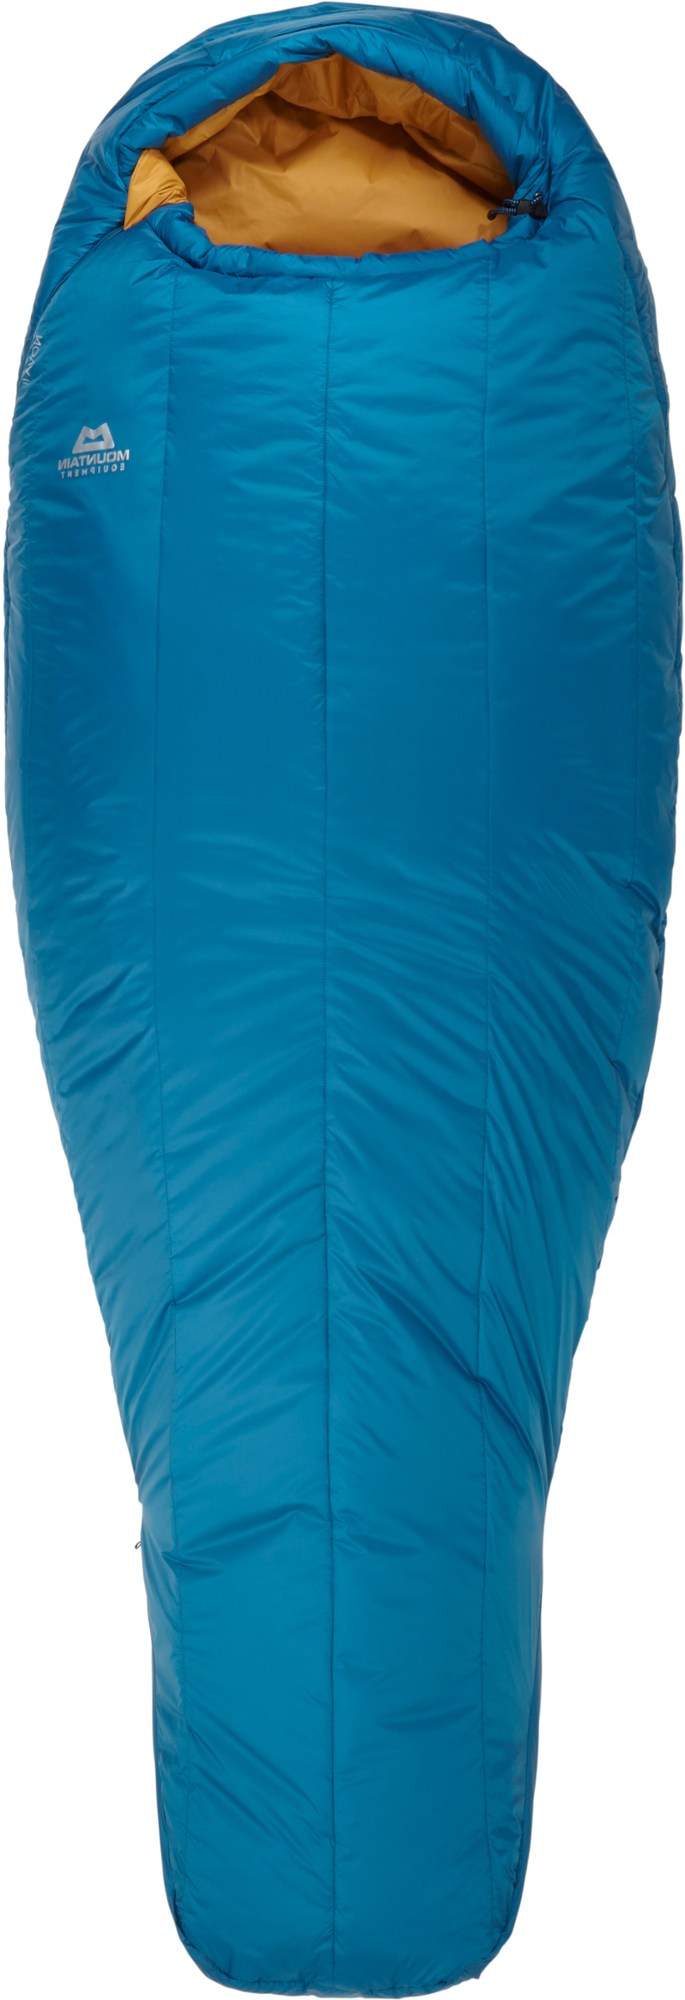 Спальный мешок Nova II - женский Mountain Equipment, синий